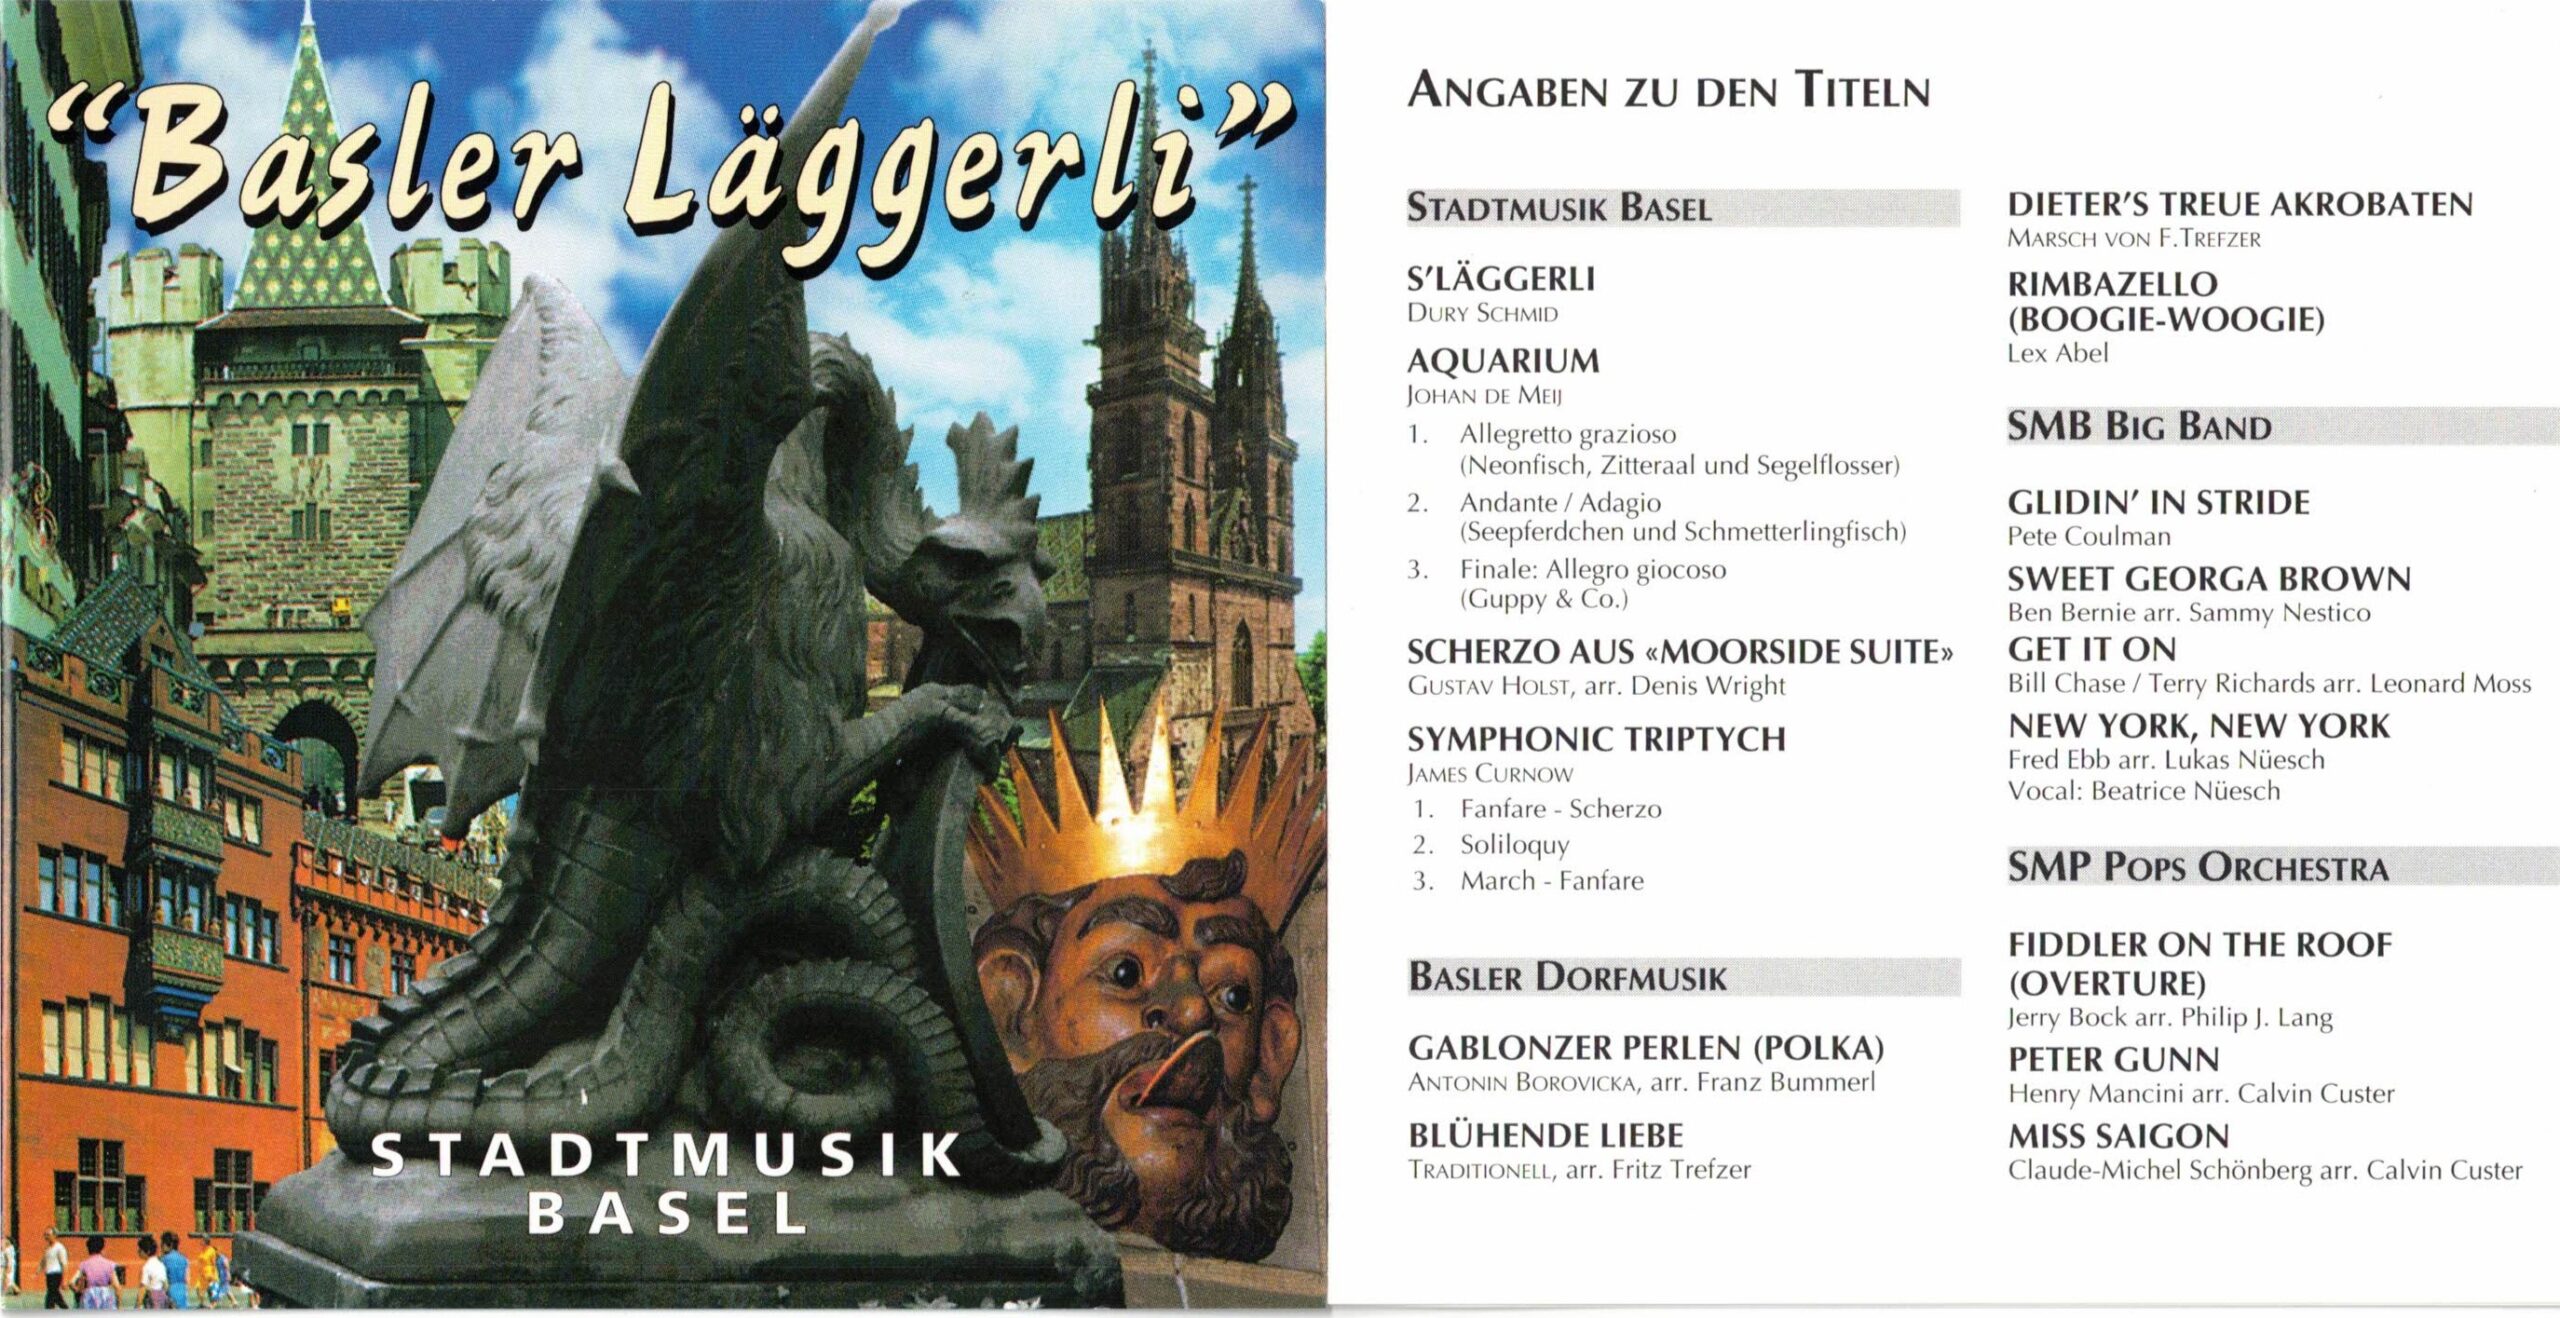 Basler Läggerli